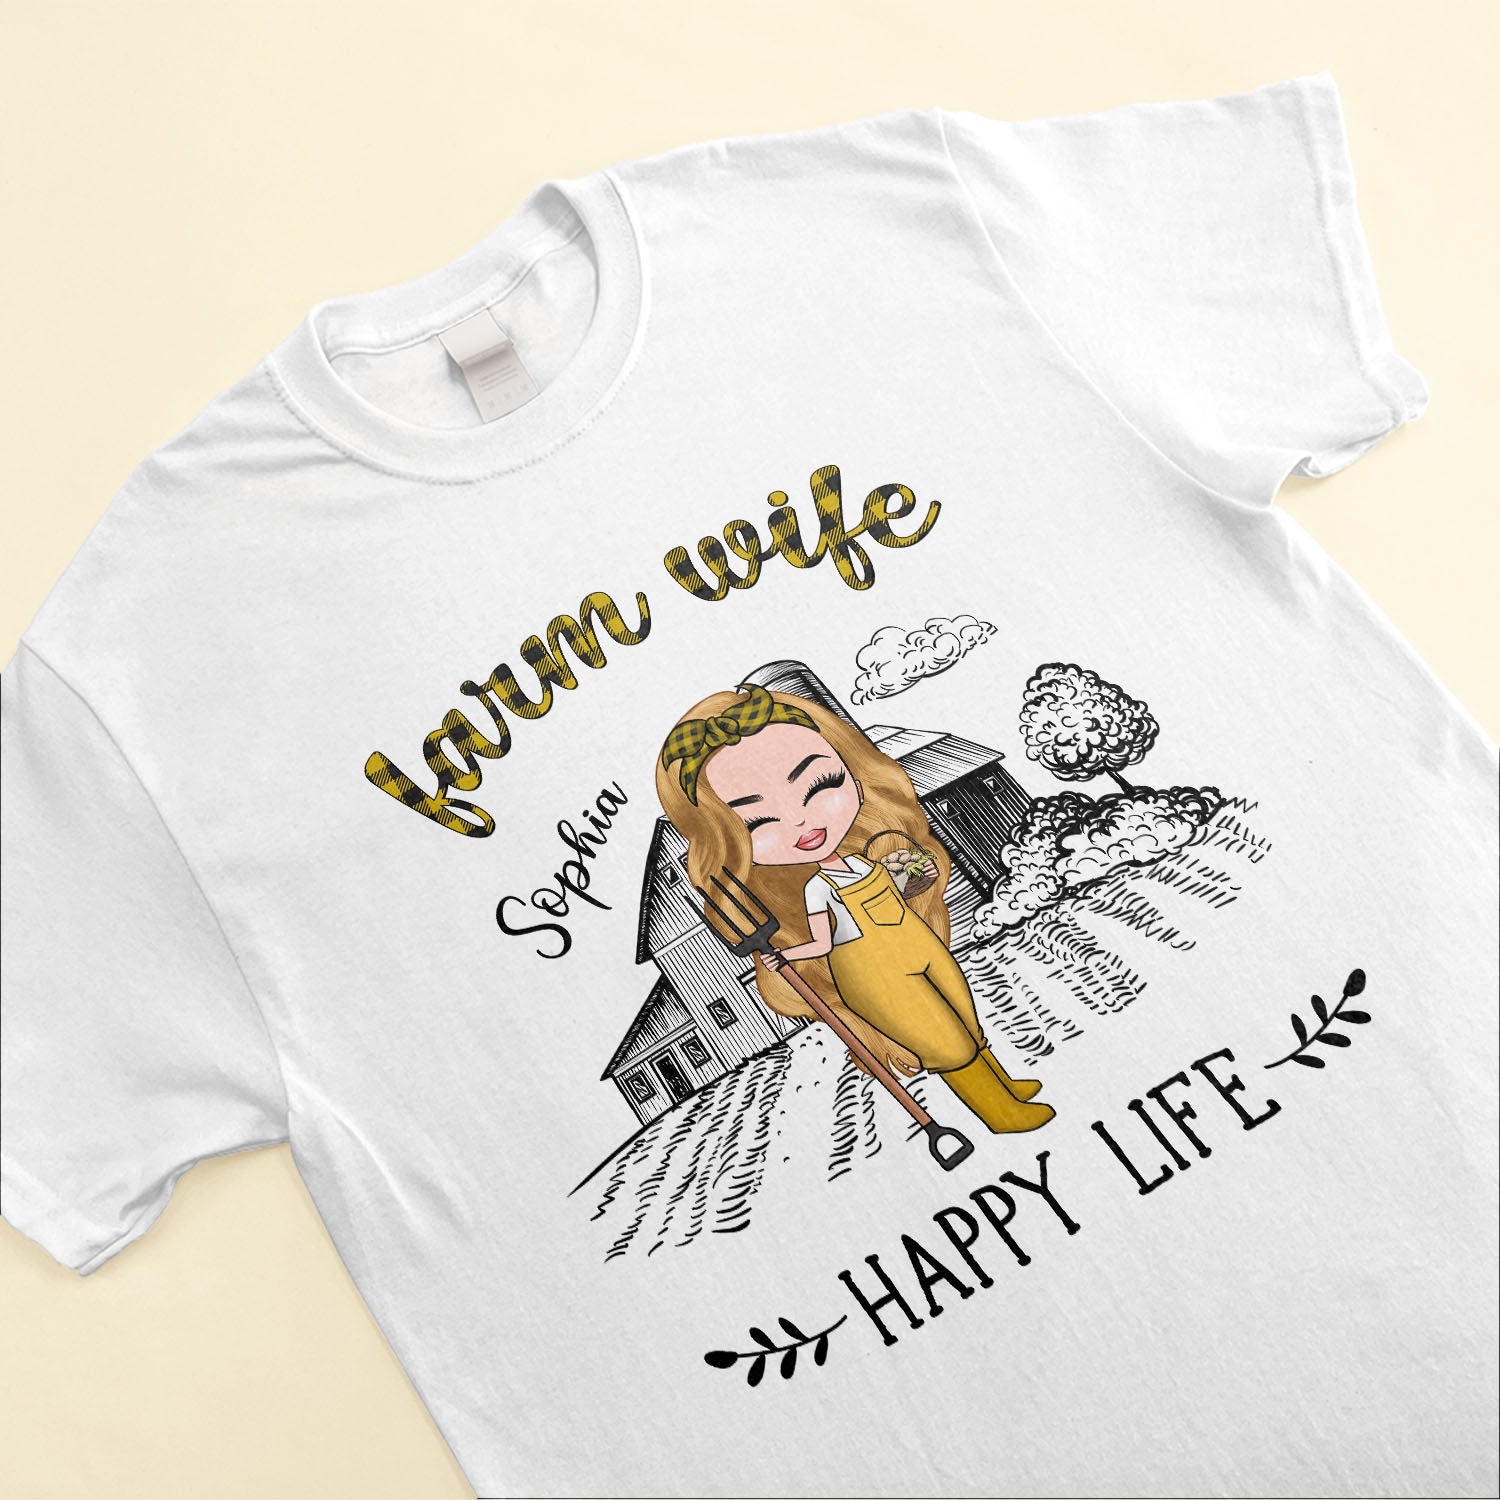 Farm Wife, Happy Life - Personalized Shirt - Birthday Gift For Farmer, Farm Lady